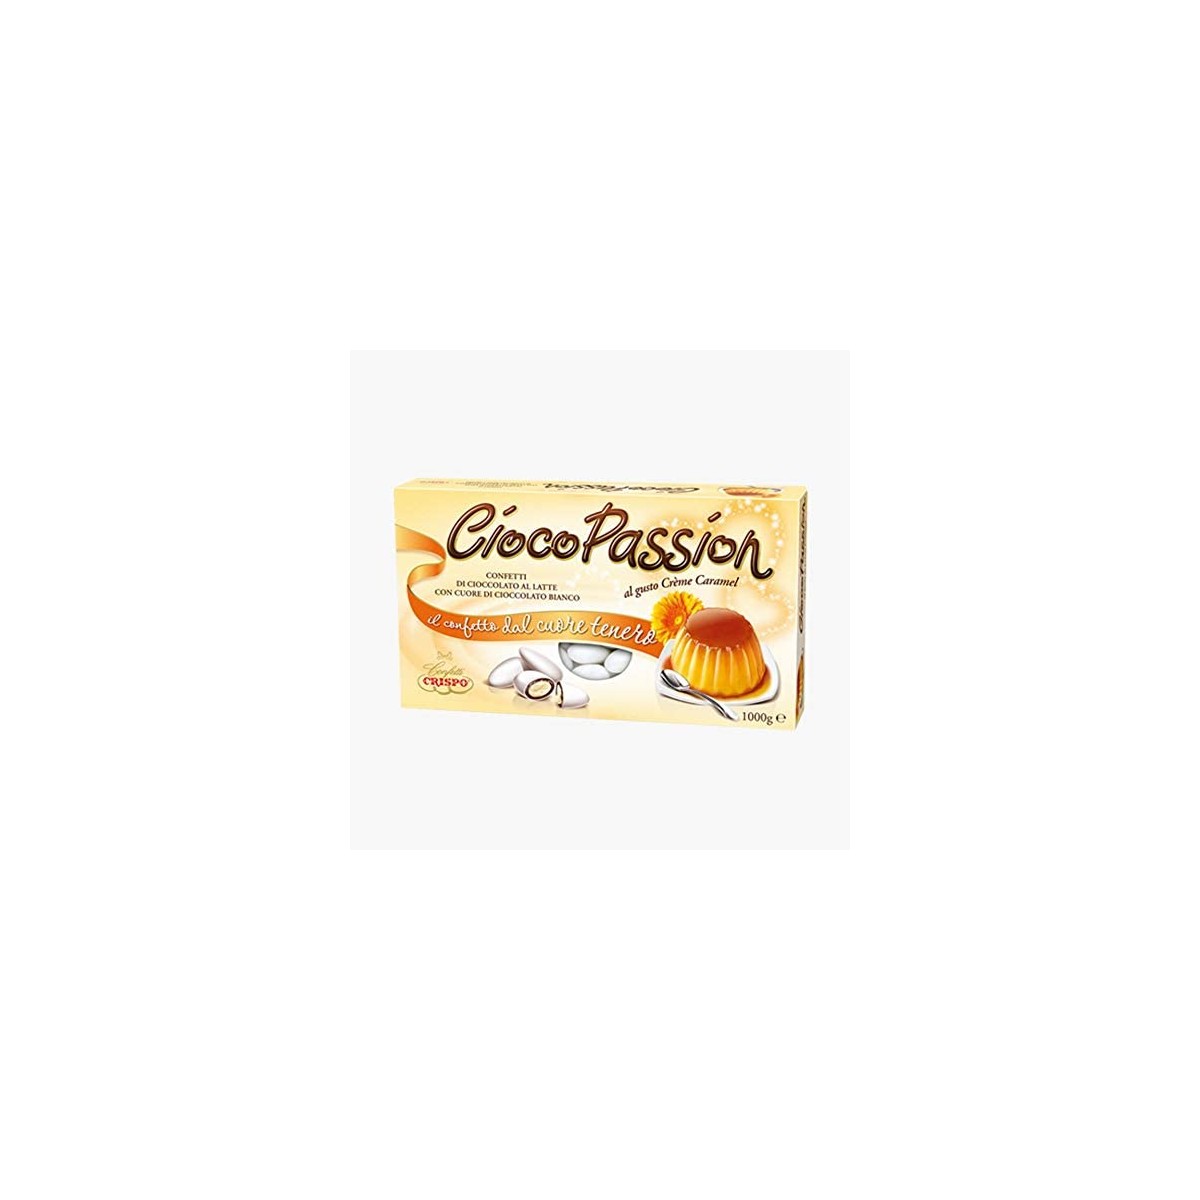 Confetti Crispo Ciocopassion Crème Caramel